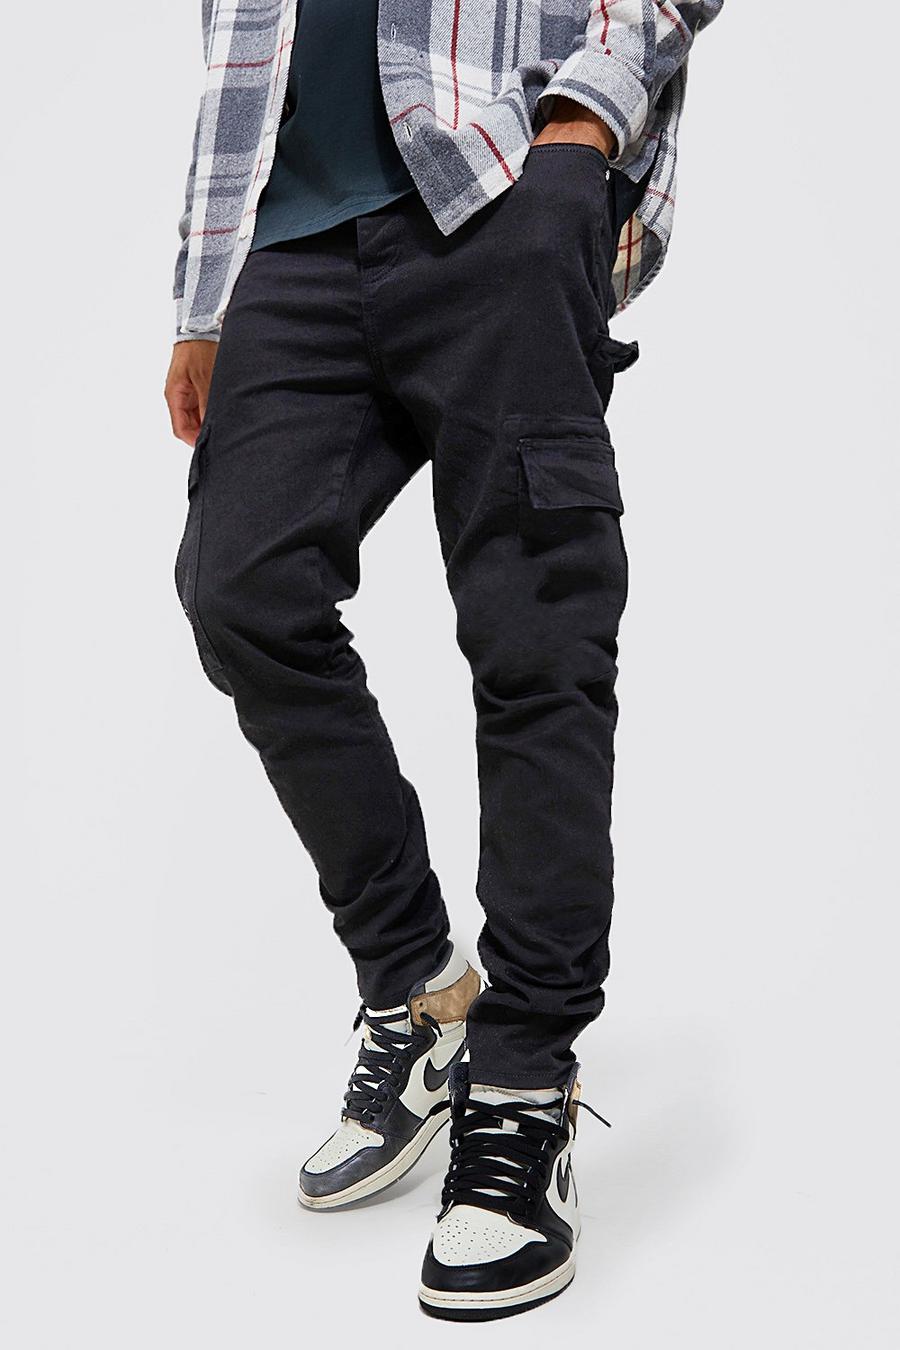 שחור negro סקיני ג'ינס דגמ'ח נמתח בסגנון נגרים, לגברים גבוהים